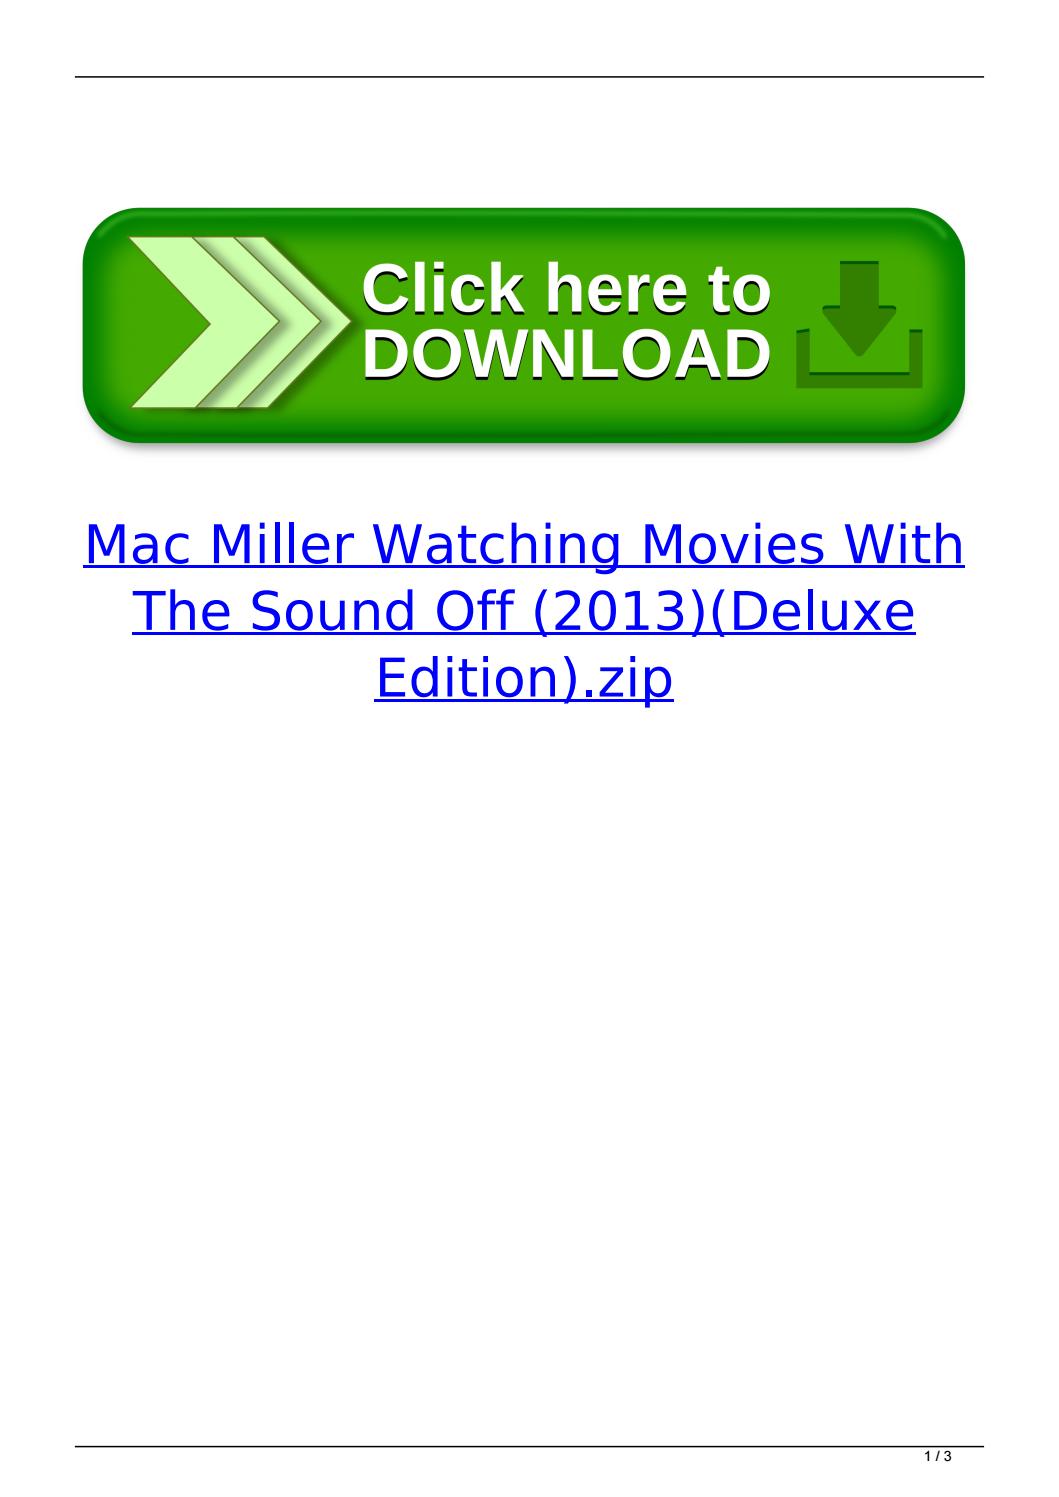 Watching Movies Mac Miller Download Zip